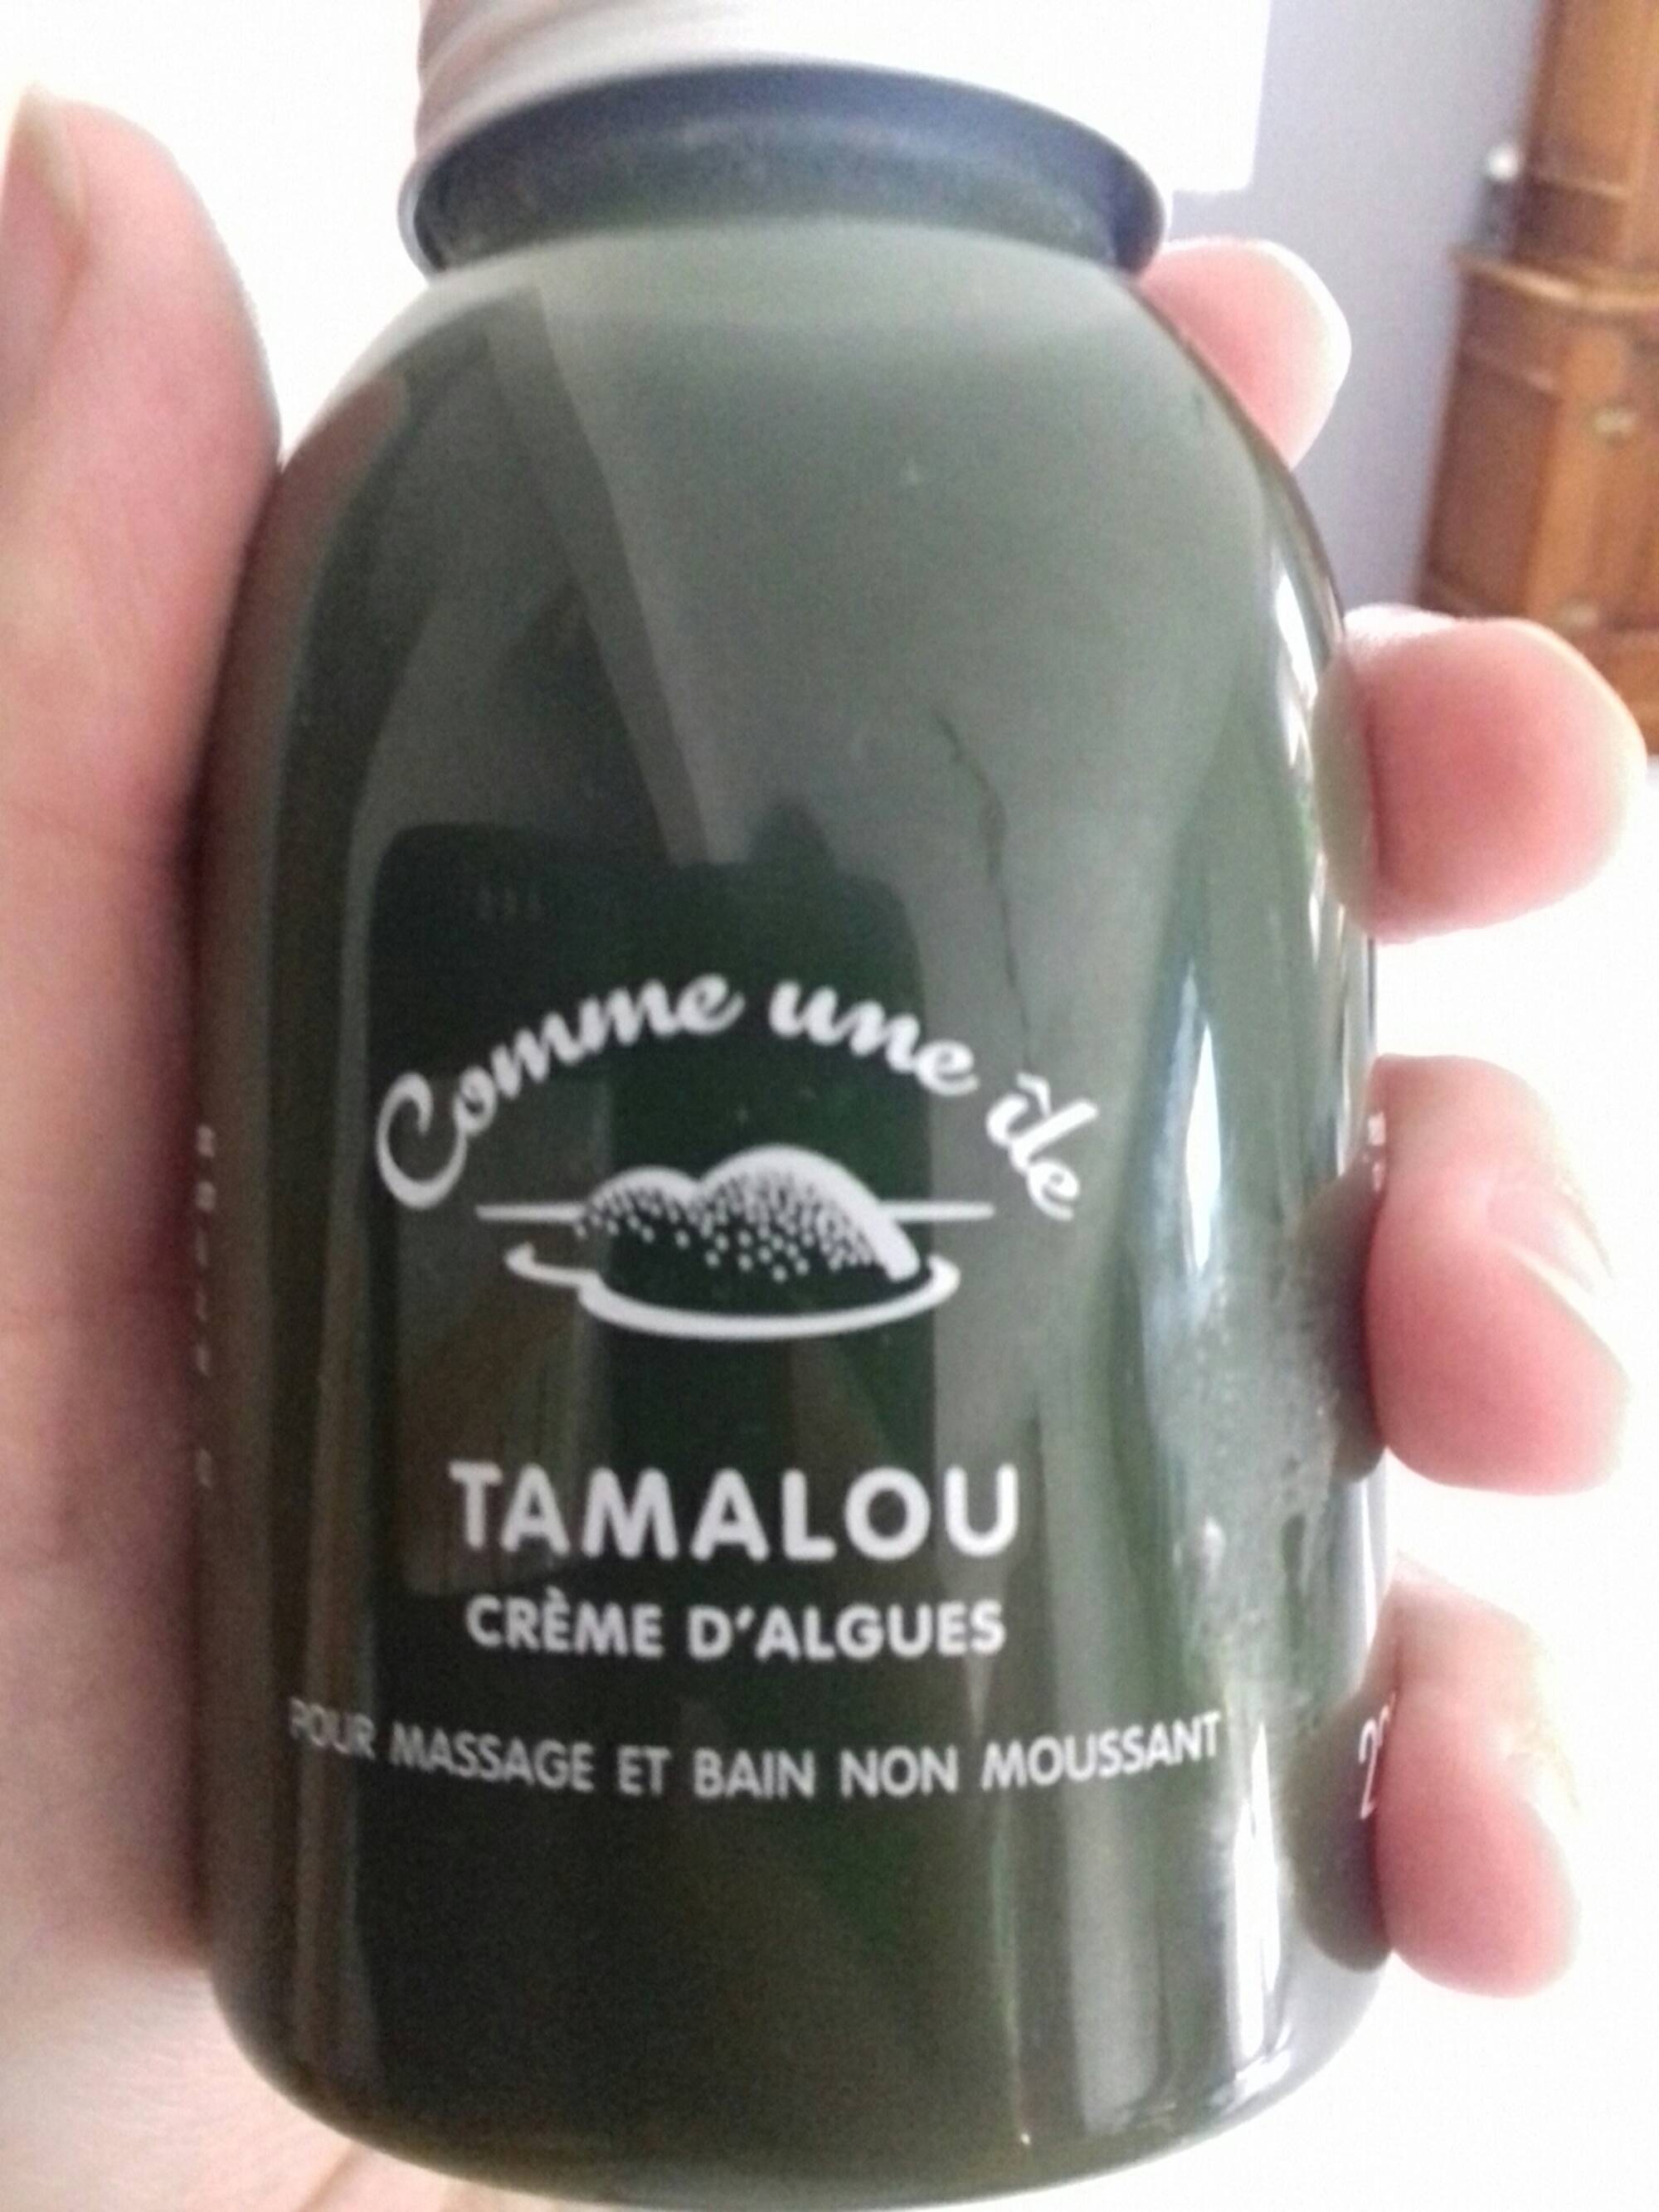 COMME UNE ÎLE - Tamalou - Crème d'algues pour massage et bain non moussant